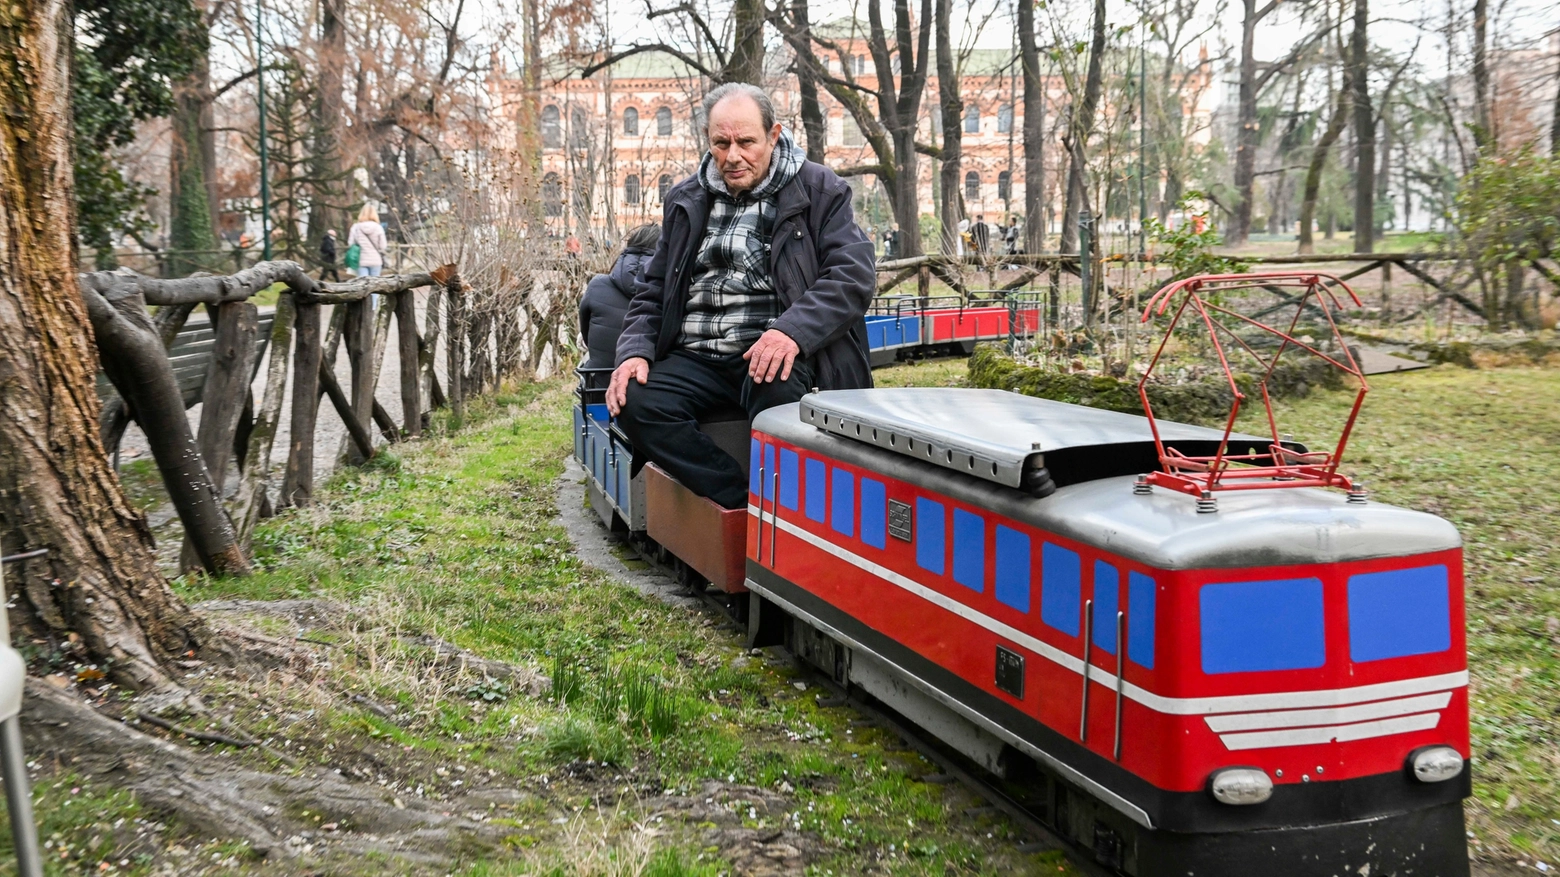 Vincenzo Caserta, da 54 anni alla guida del Trenino dei Giardini nel parco di Porta Venezia (Foto Andrea Fasani)